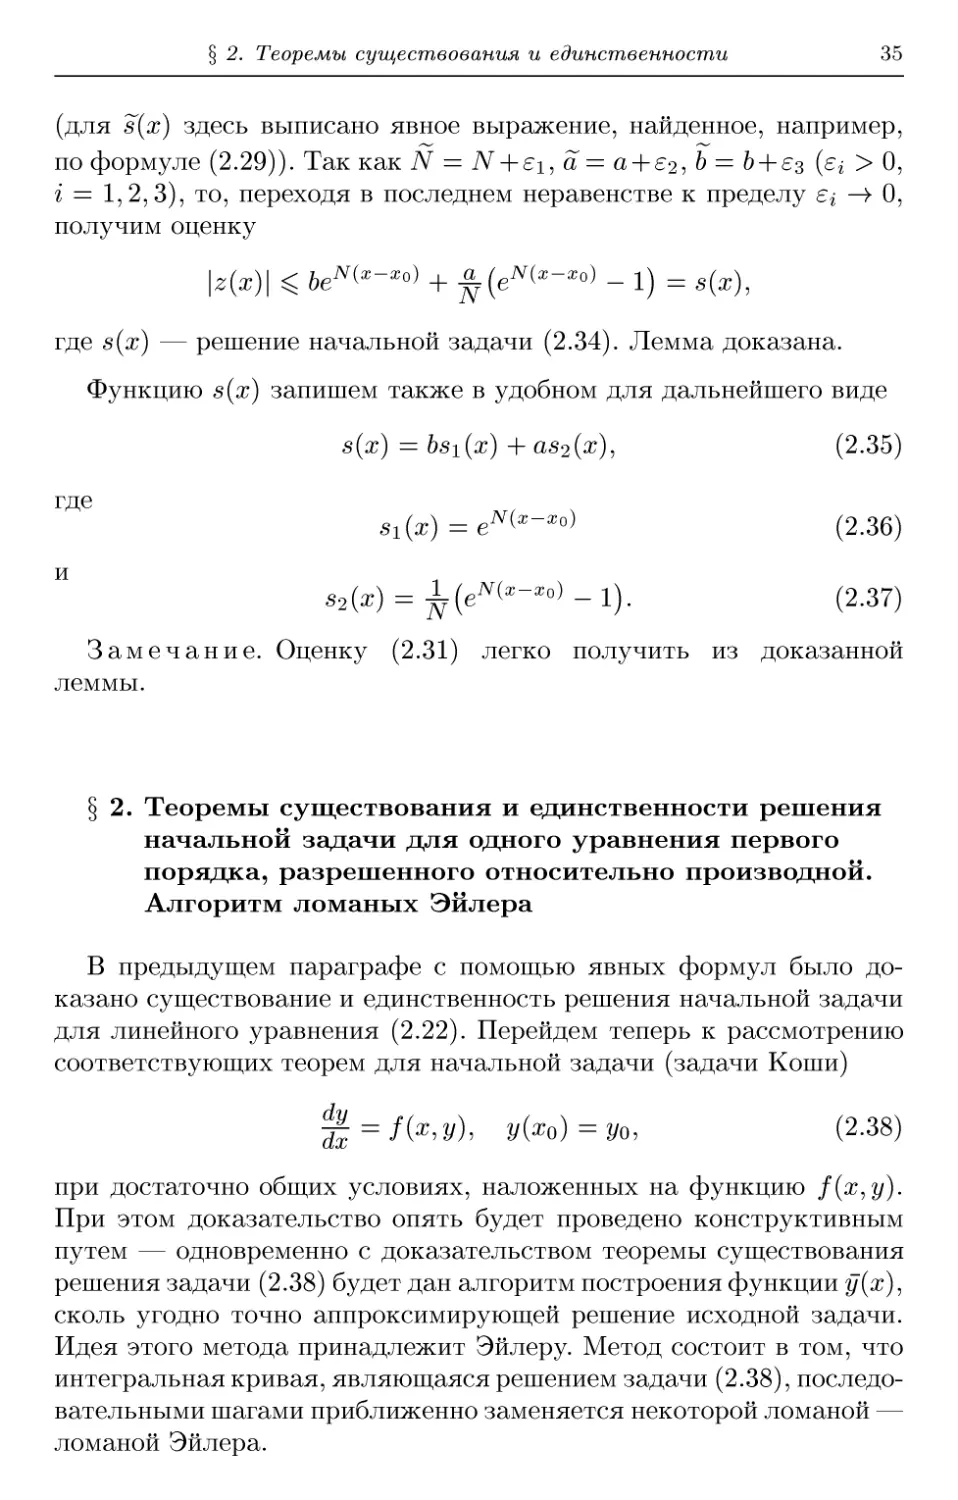 § 2. Теоремы существования и единственности решения начальной задачи для одного уравнения первого порядка, разрешенного относительно производной. Алгоритм ломаных Эйлера